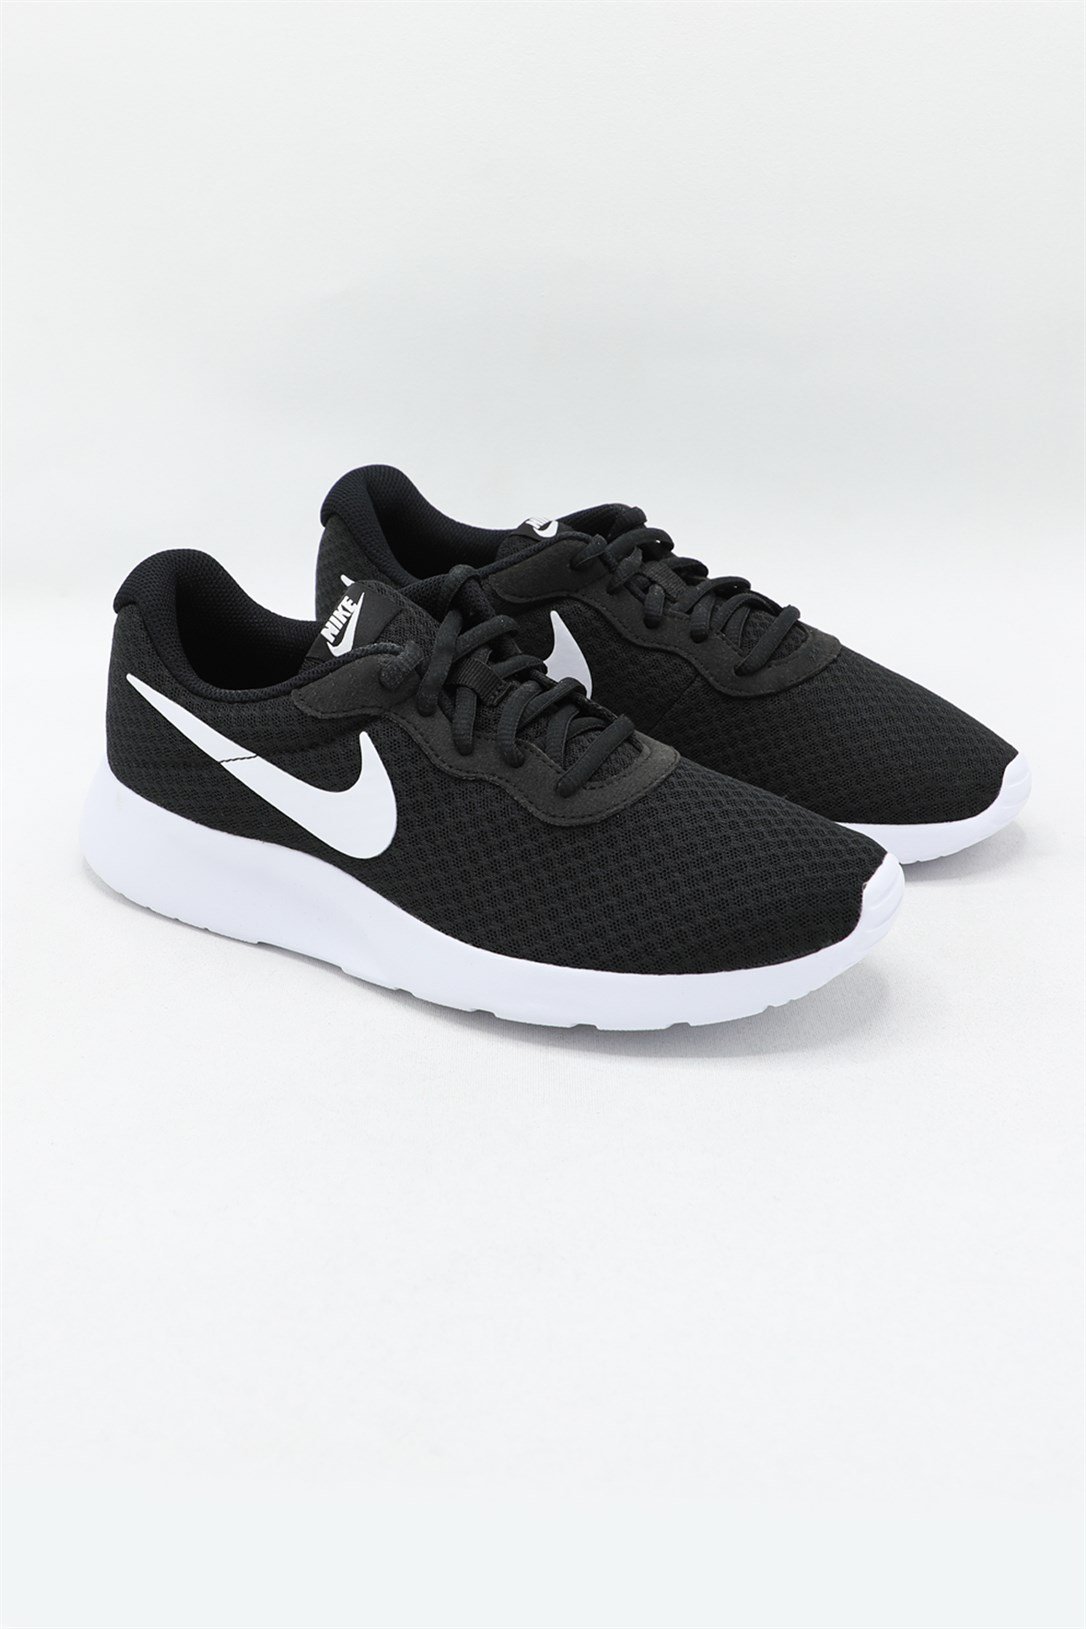 Nike Günlük Koşu Yürüyüş Syh Beyaz Erkek Spor Ayakkabı 812654-011 | Ayakkabı  City